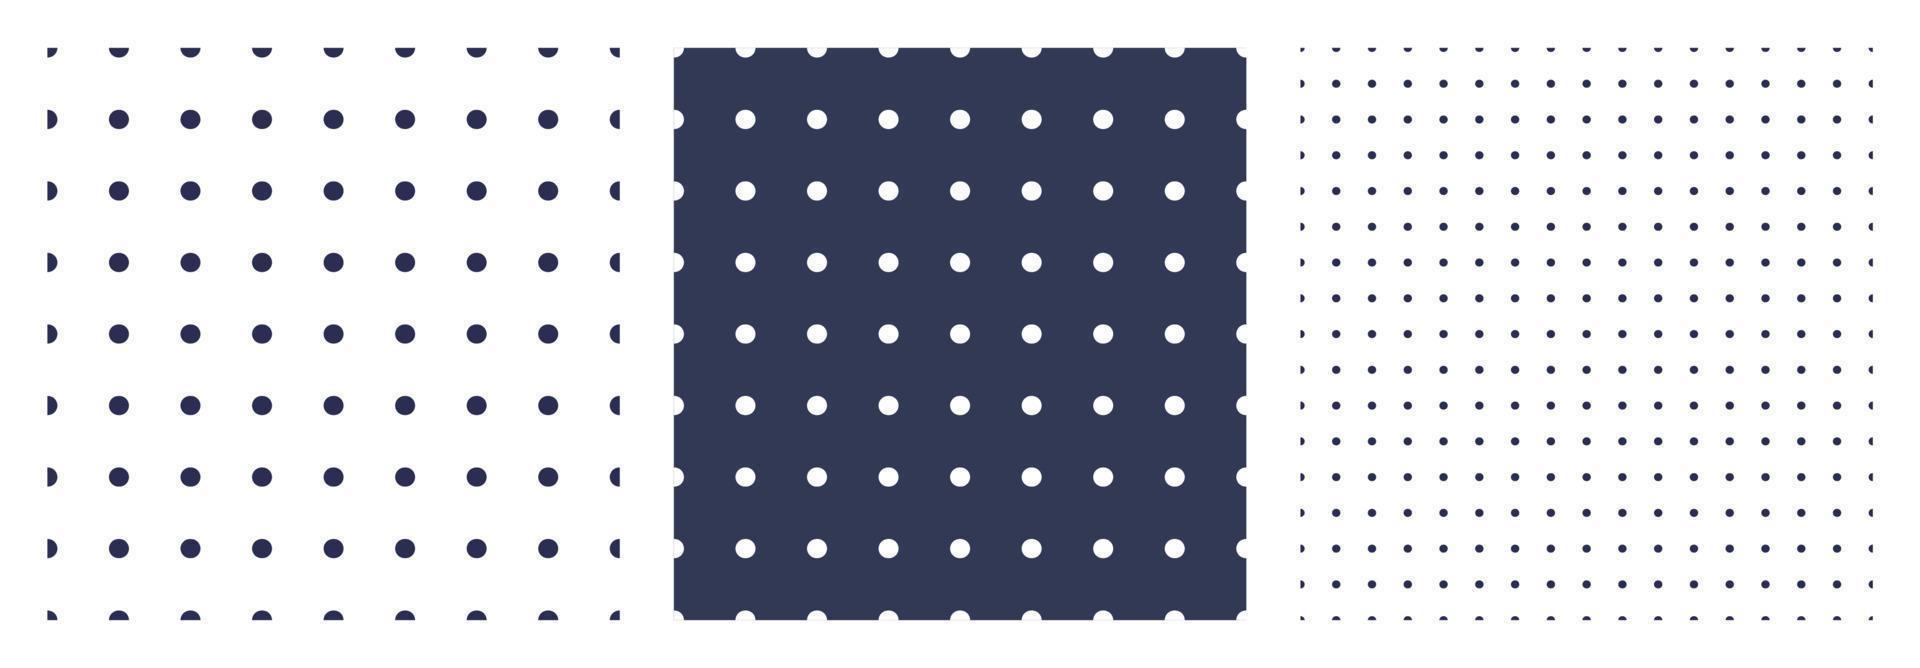 uppsättning av polka prickar eller kula tidning textur. sömlös svartvit mönster. prickad bakgrund. mjuk abstrakt geometrisk mönster. vektor